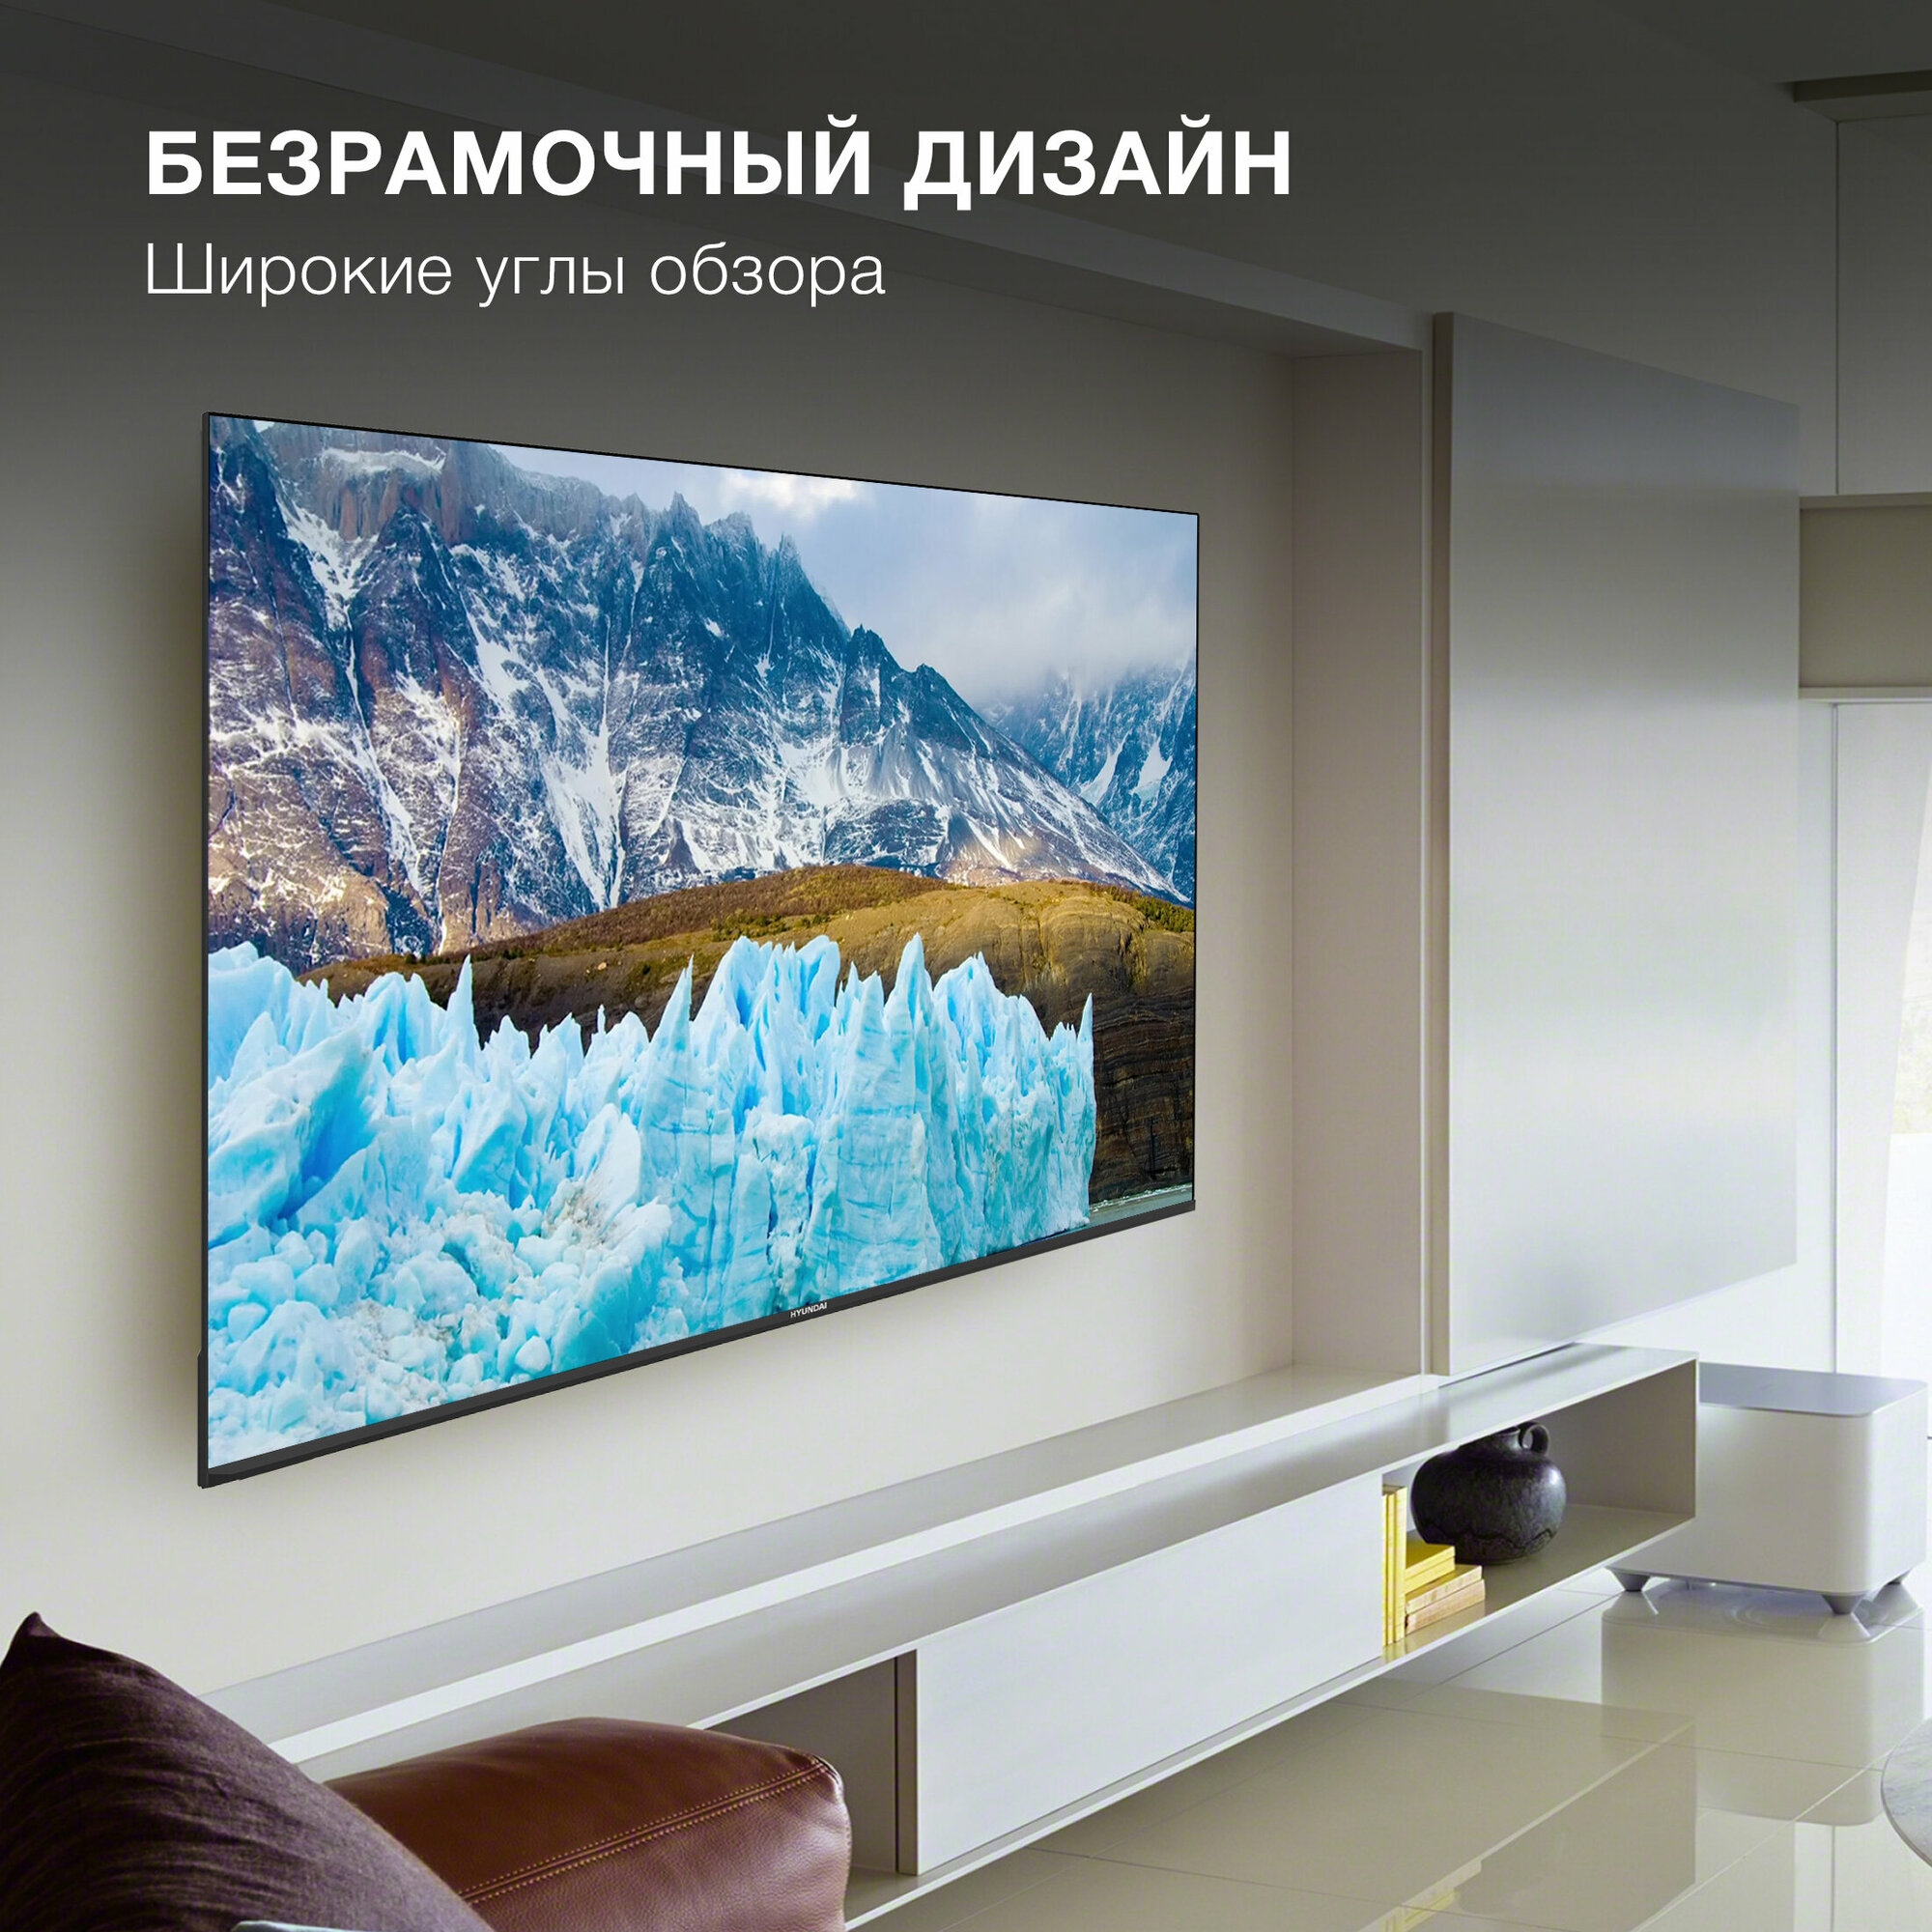 Телевизор Hyundai Яндекс.ТВ H-LED75BU7005, 75", LED, 4K Ultra HD, Яндекс.ТВ, черный - фото №14